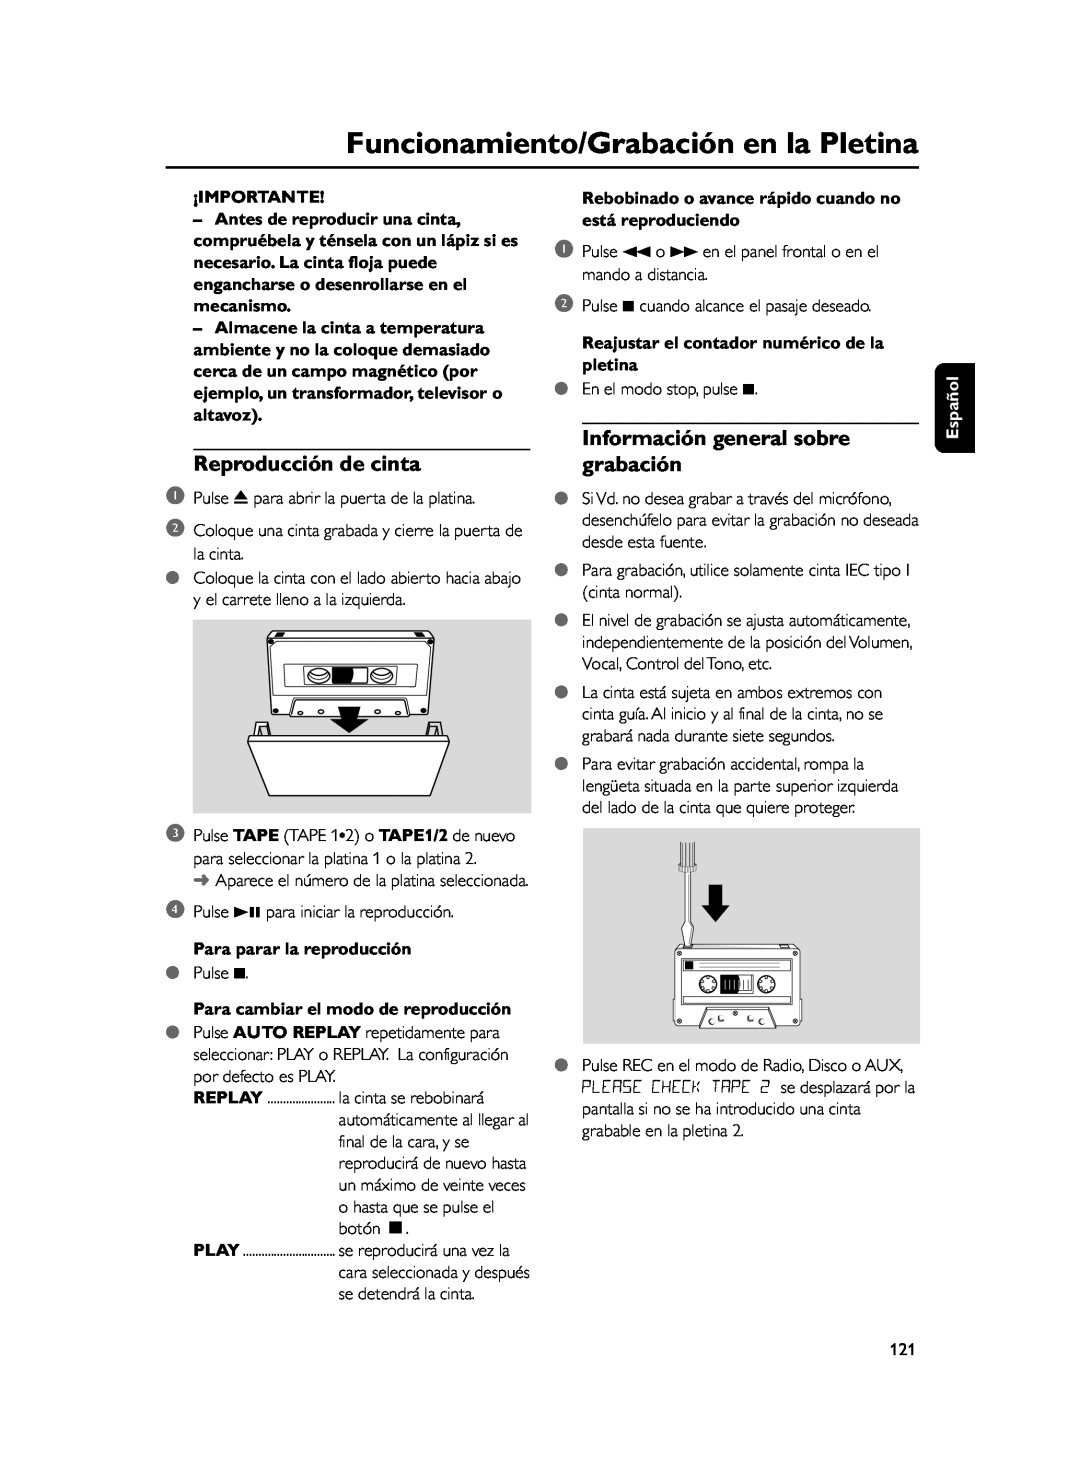 Philips FWD39 Funcionamiento/Grabación en la Pletina, Reproducción de cinta, Información general sobre grabación, Español 